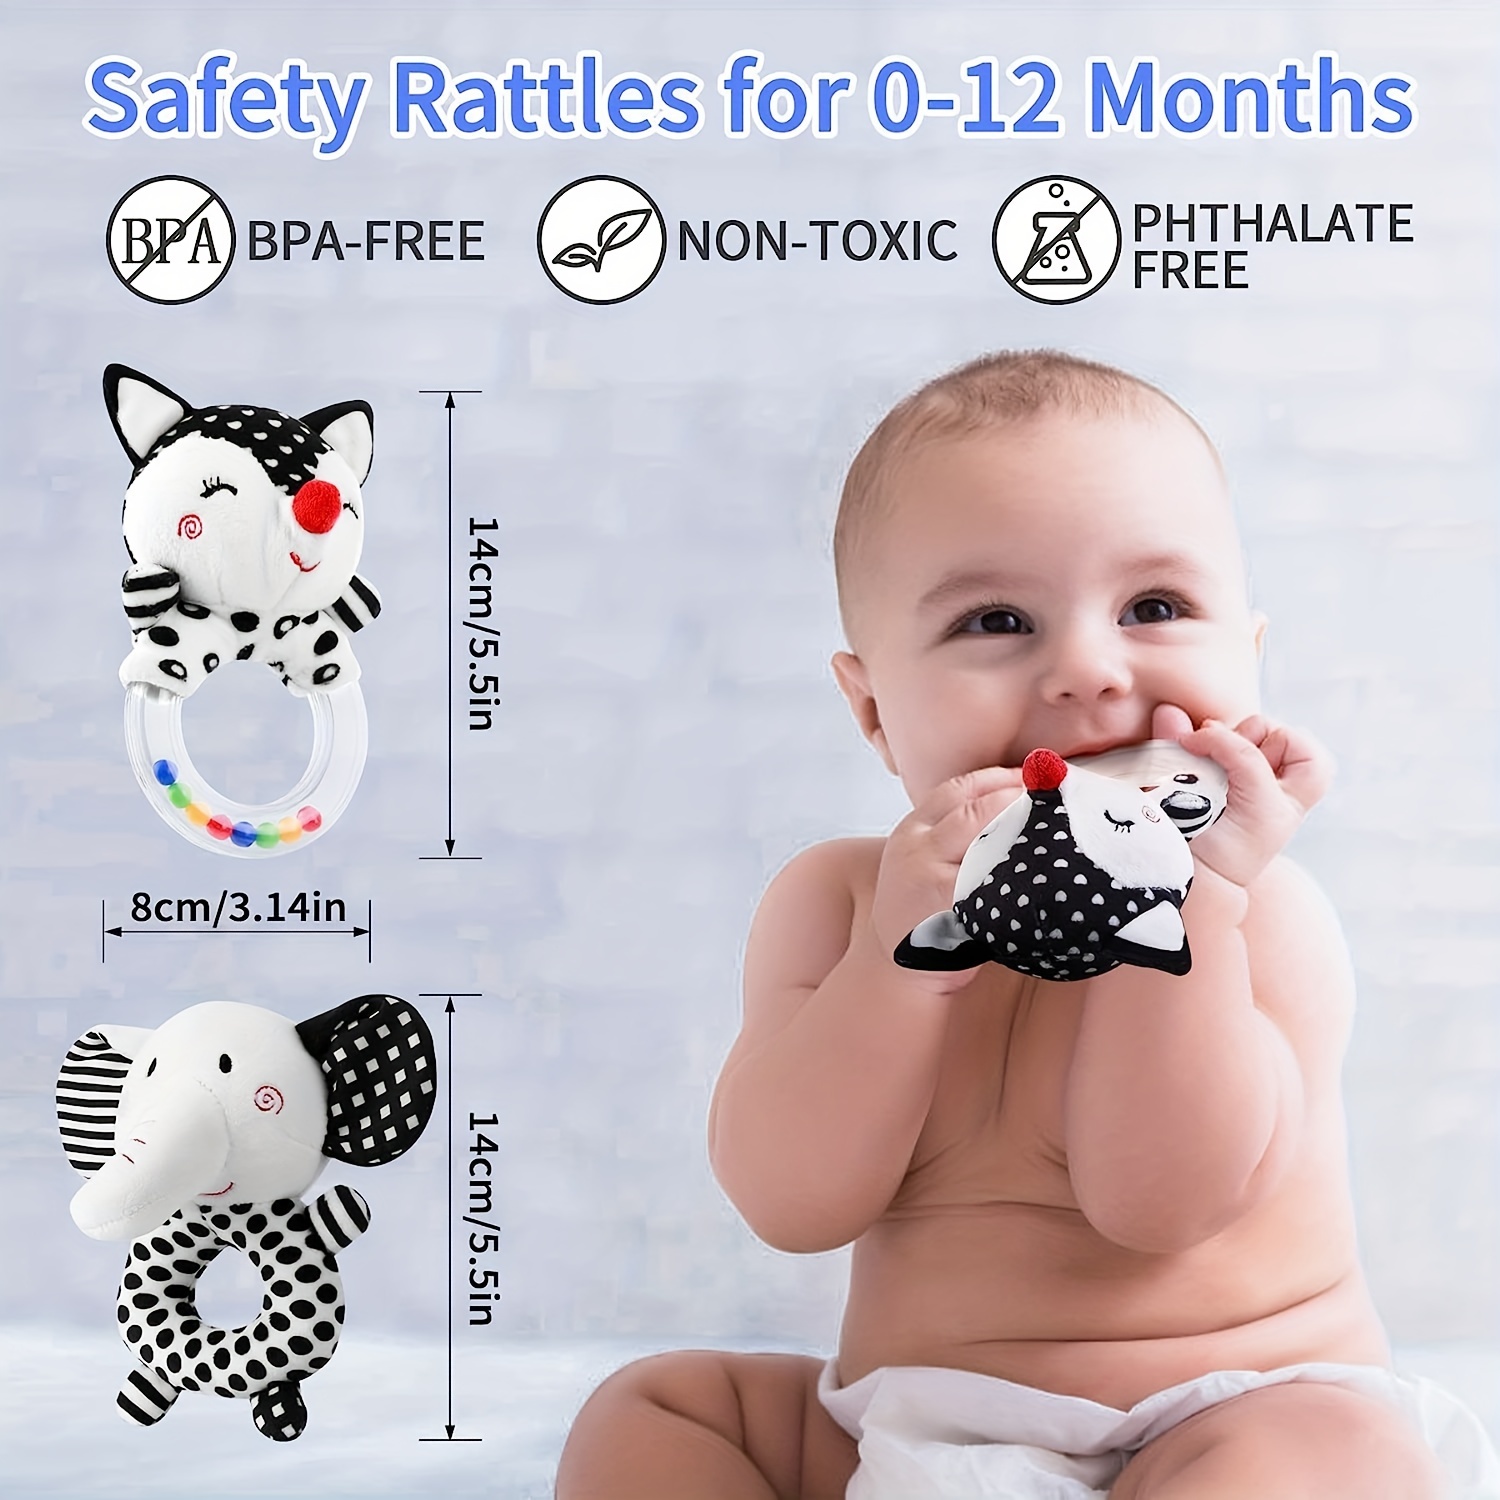 Hochets Bébé 0-6 Mois : Hochets Doux Pour Bébés 0-6 Mois Jouets Sensoriels  Nouveau-nés, Jouets Pour Bébé Noir Et Blanc À Contraste Élevé 0-3 Mois